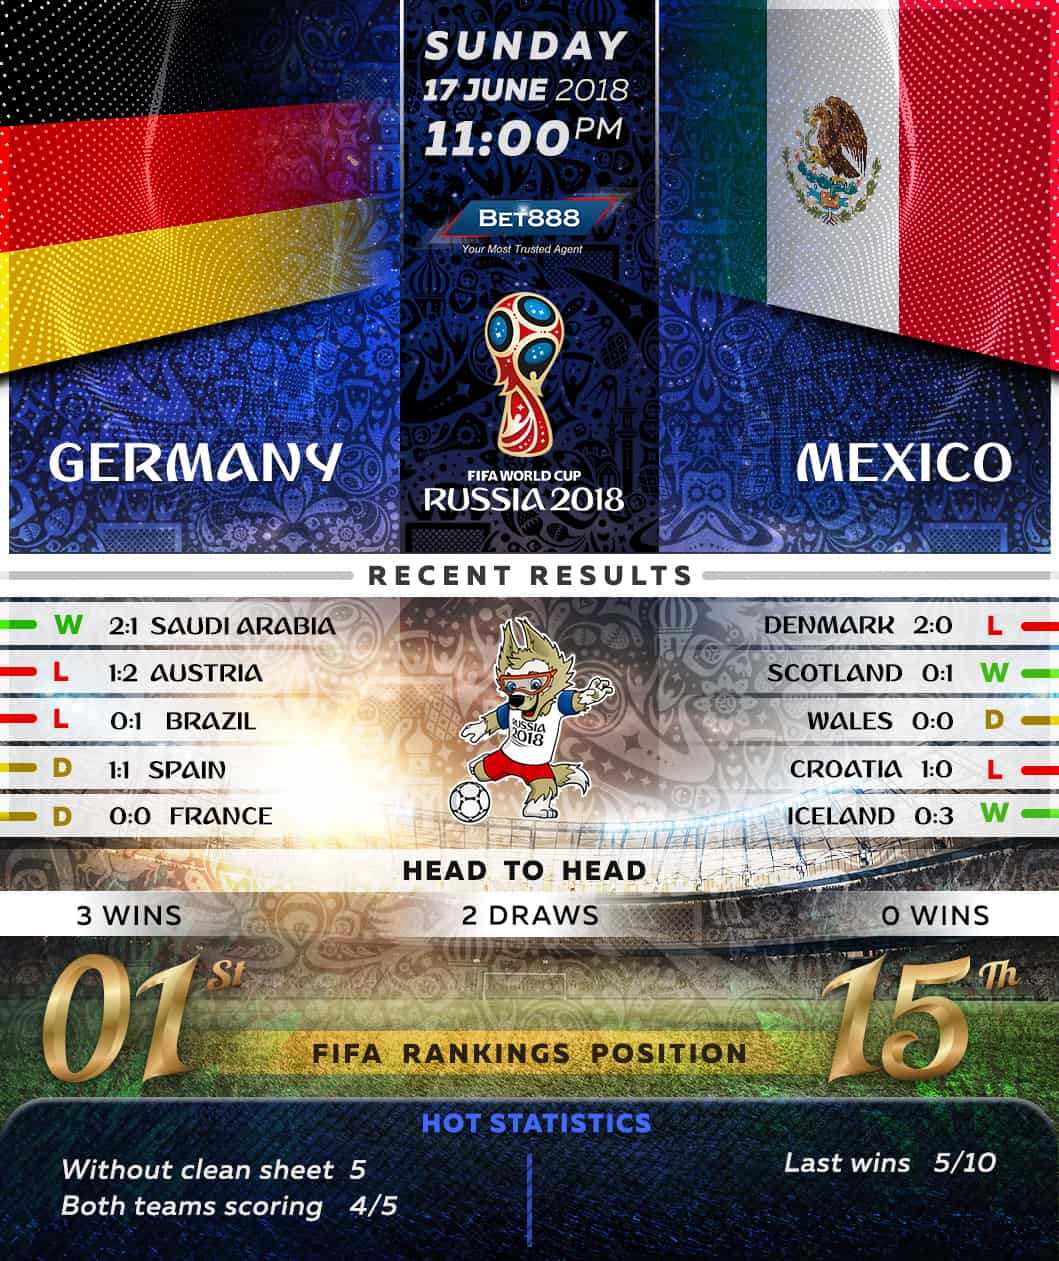 Germany vs Mexico 17/06/18